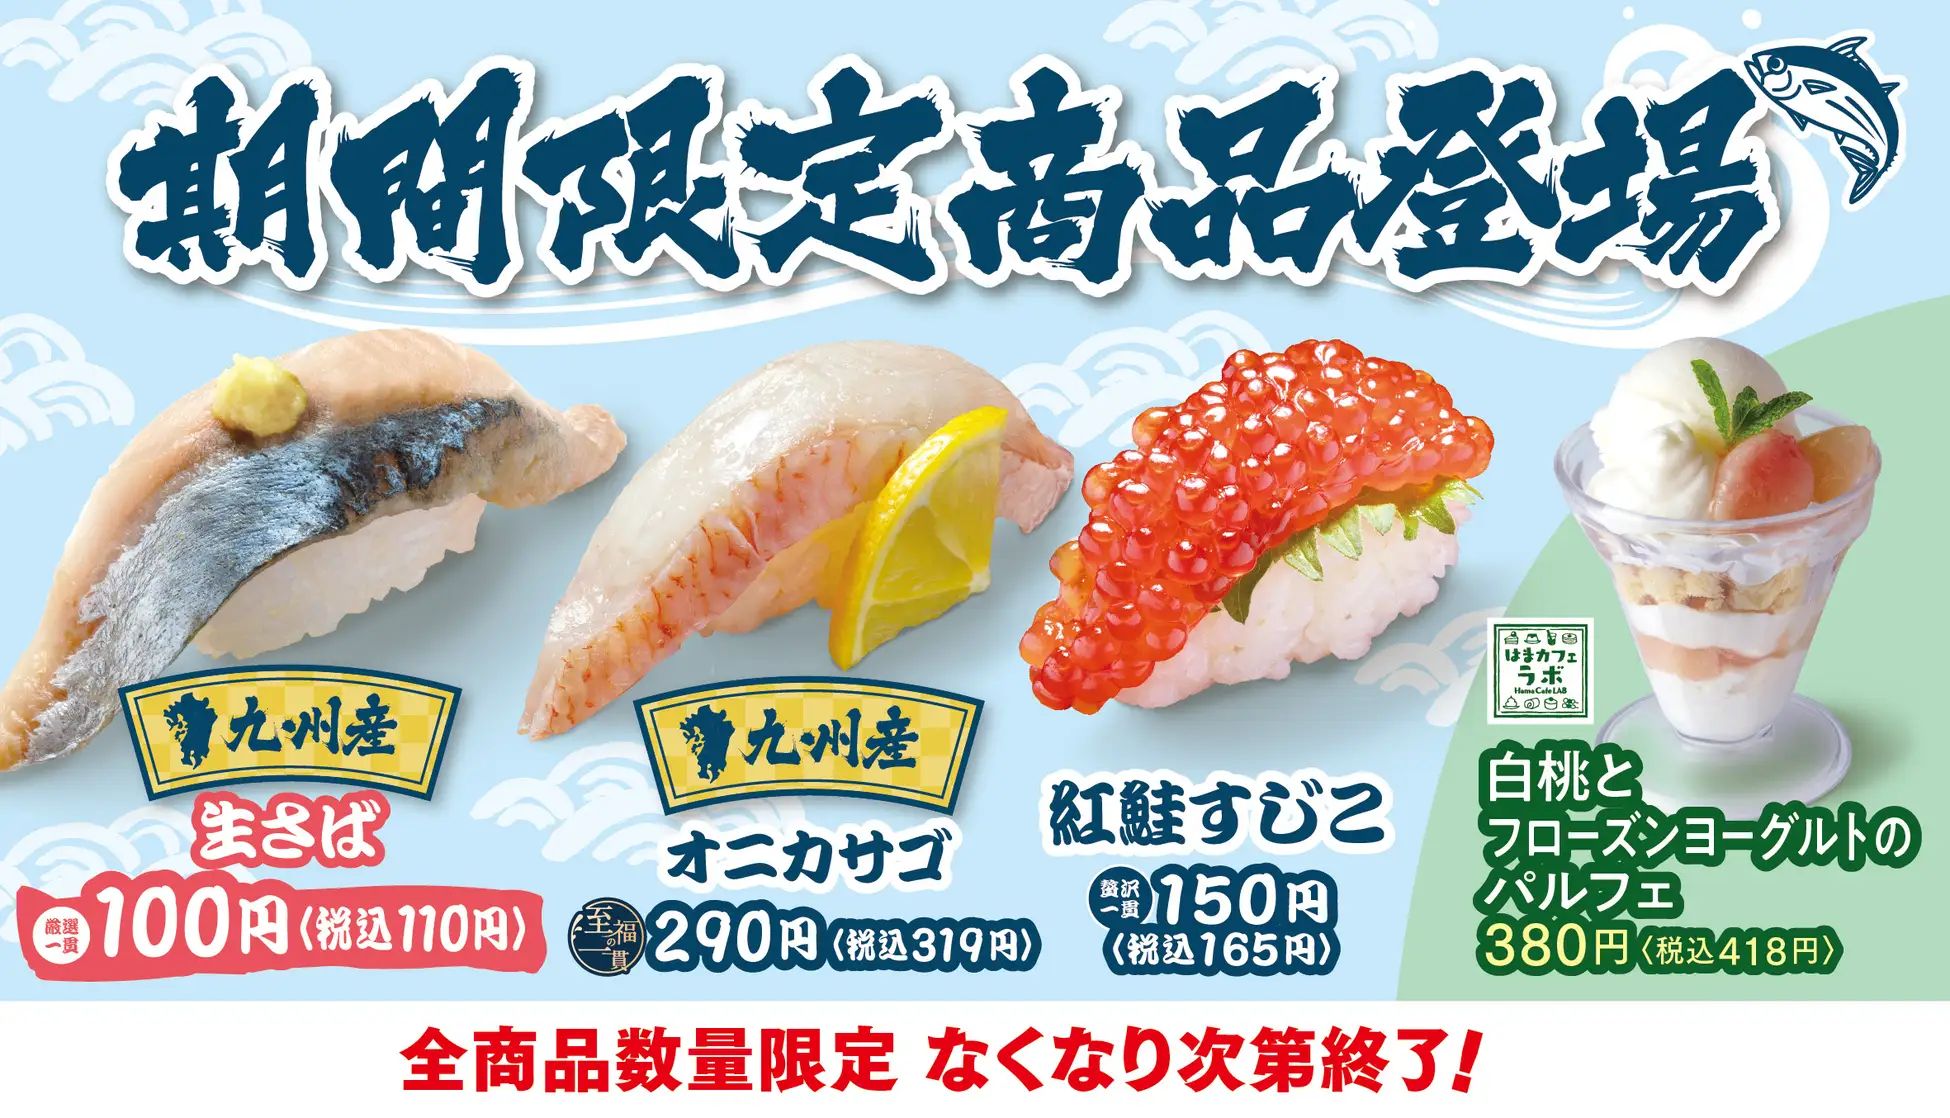 はま寿司「九州産生さば」「九州産オニカサゴ」「紅鮭すじこ」発売